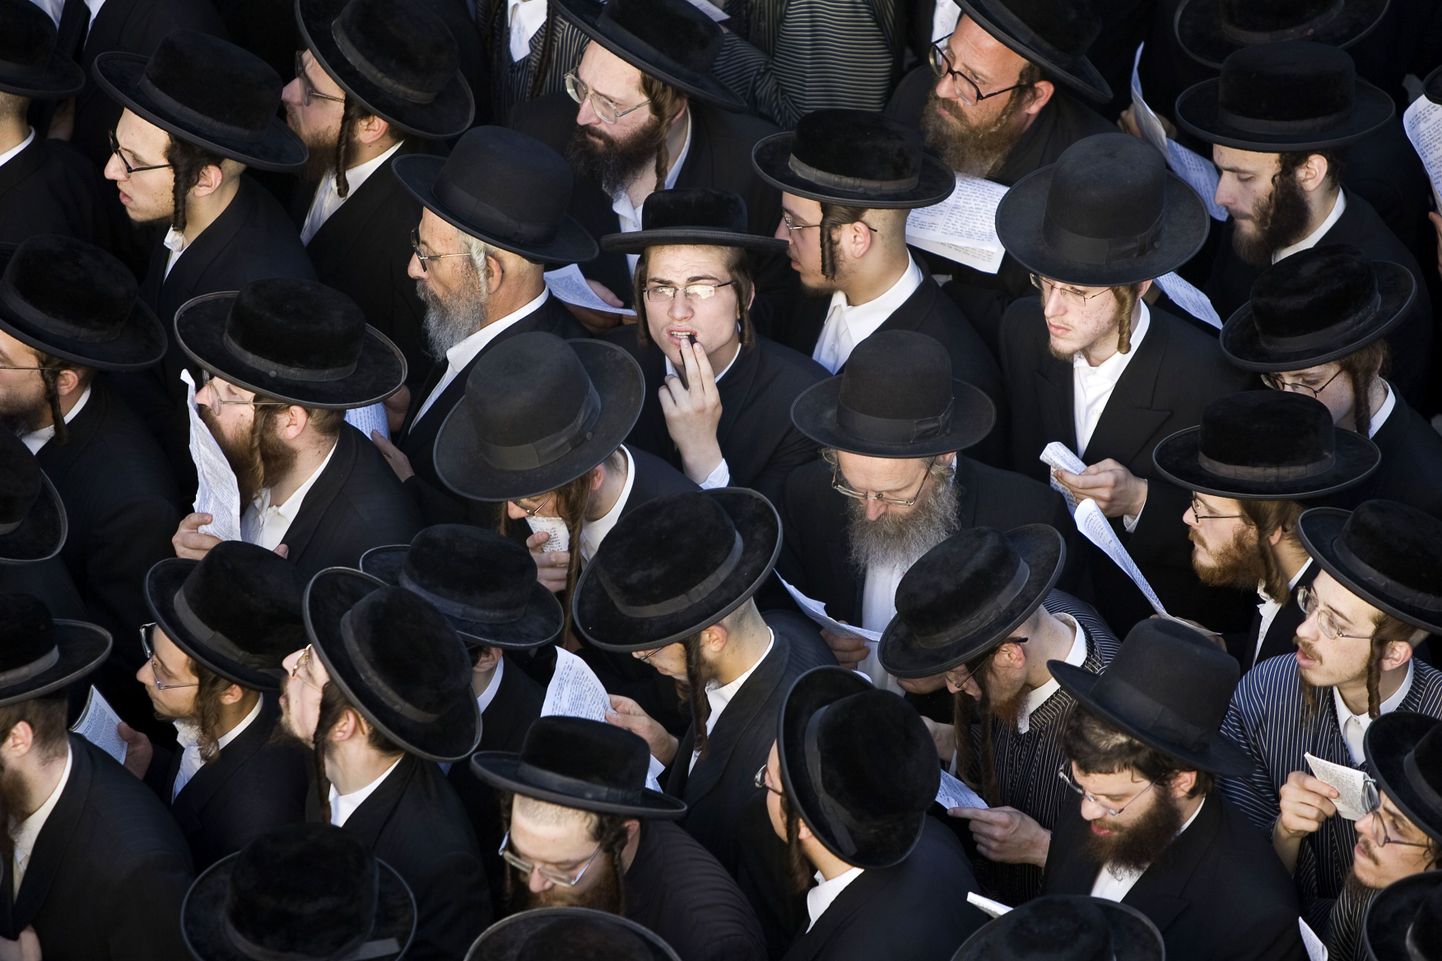 Rabid ja kabalausu kummardajad palvetasid õhus Iisraeli kaitseks